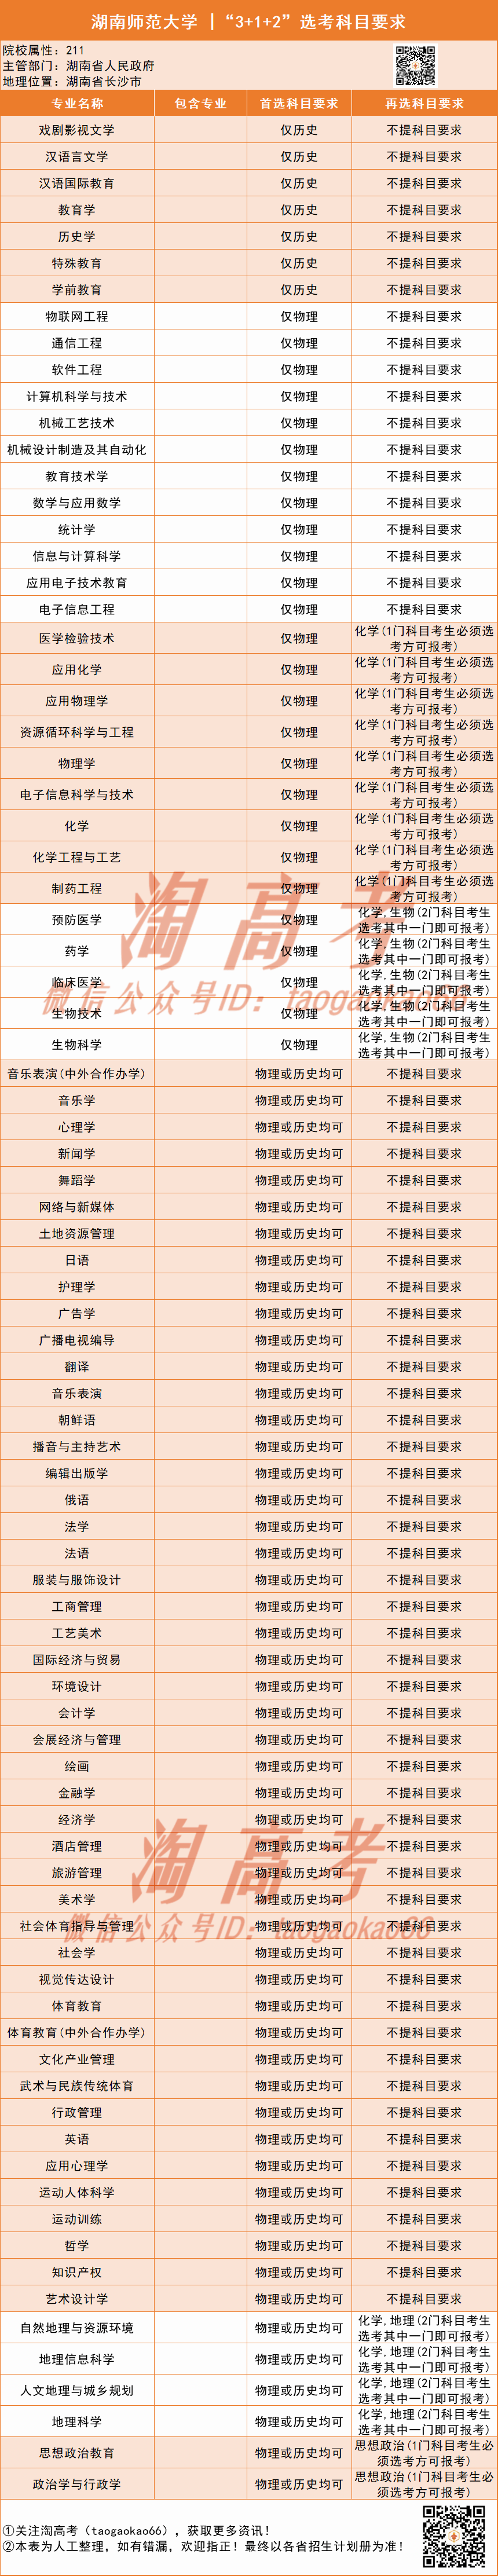 湖南投档线排名2020_湖南师范大学2020年各专业录取分排行榜!